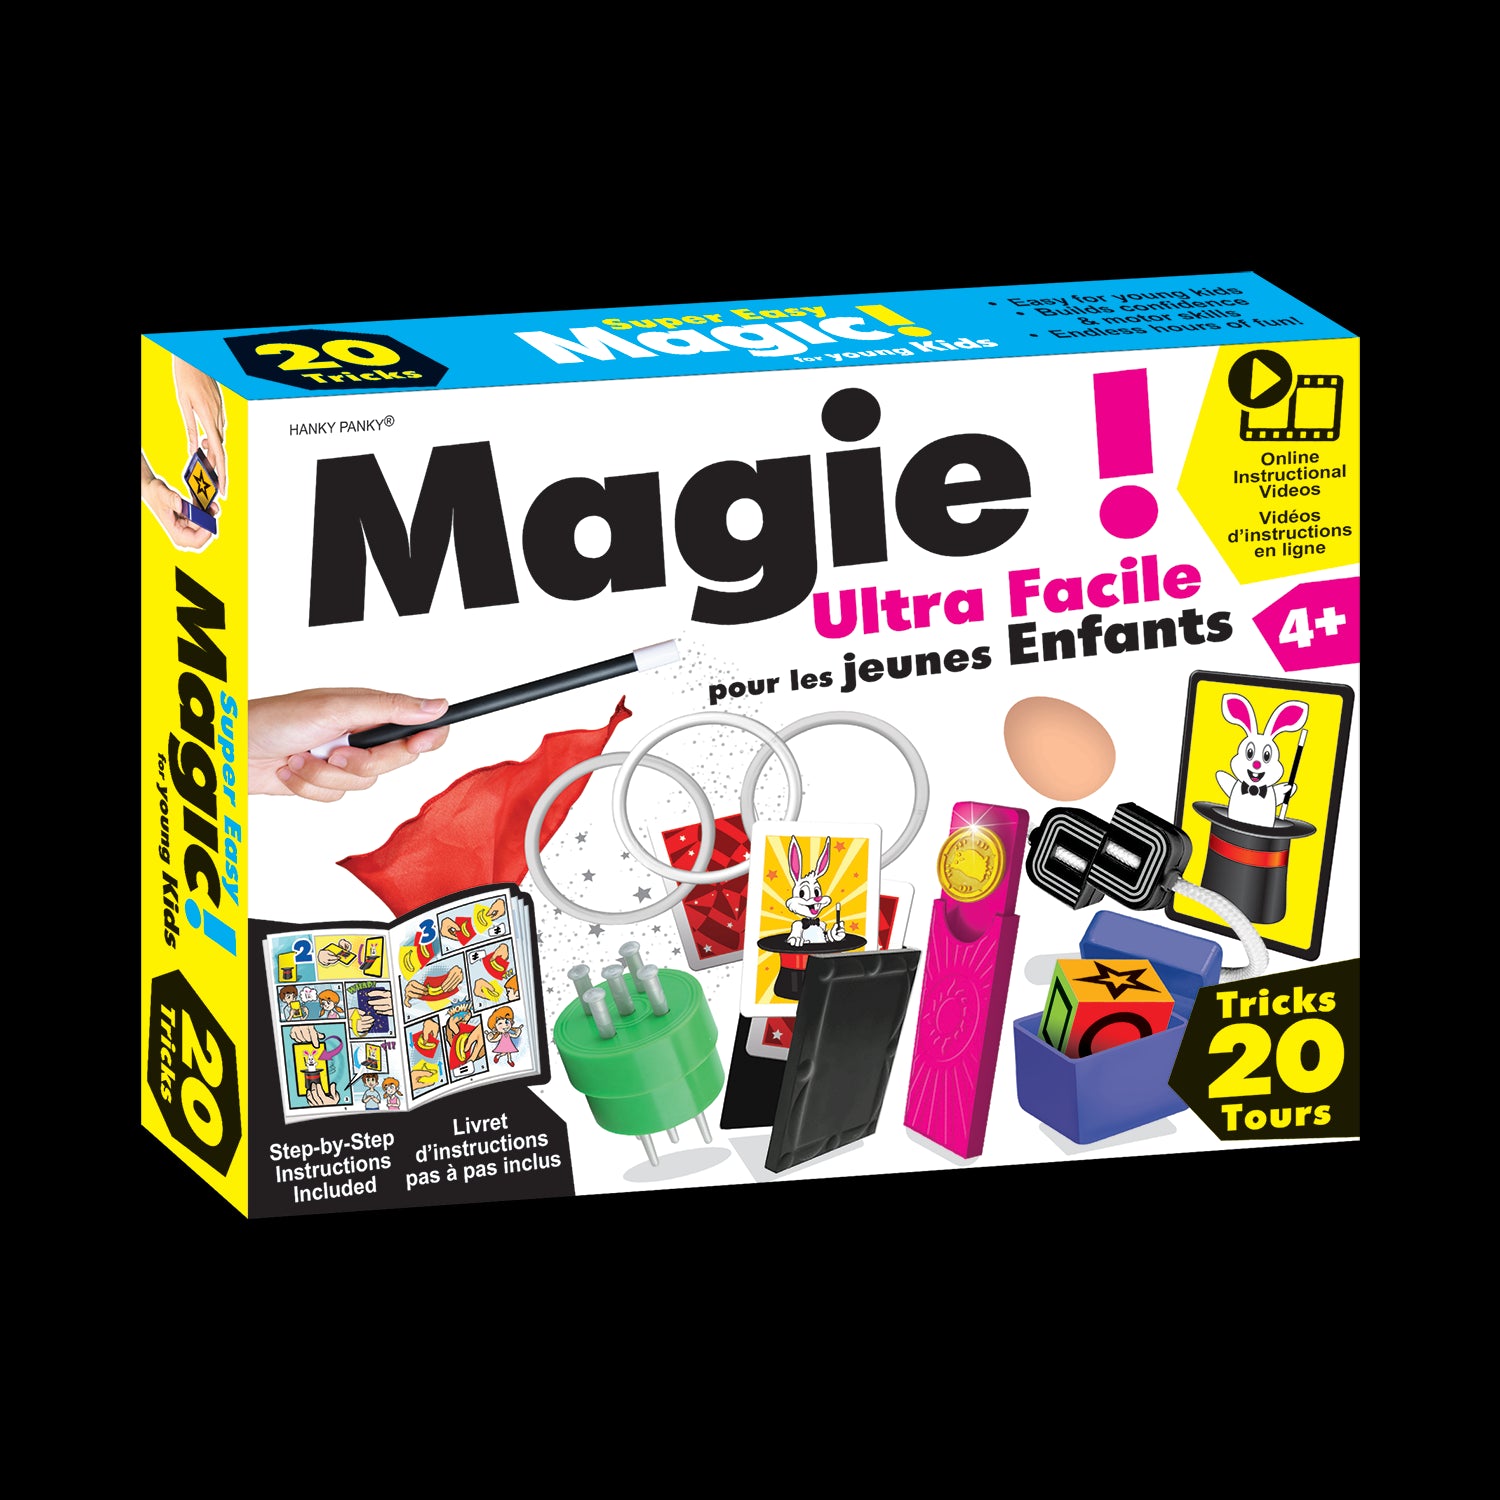 astuces magiques étonnantes ensemble jouets accessoires kits magicien  jouets fournitures tours de magie